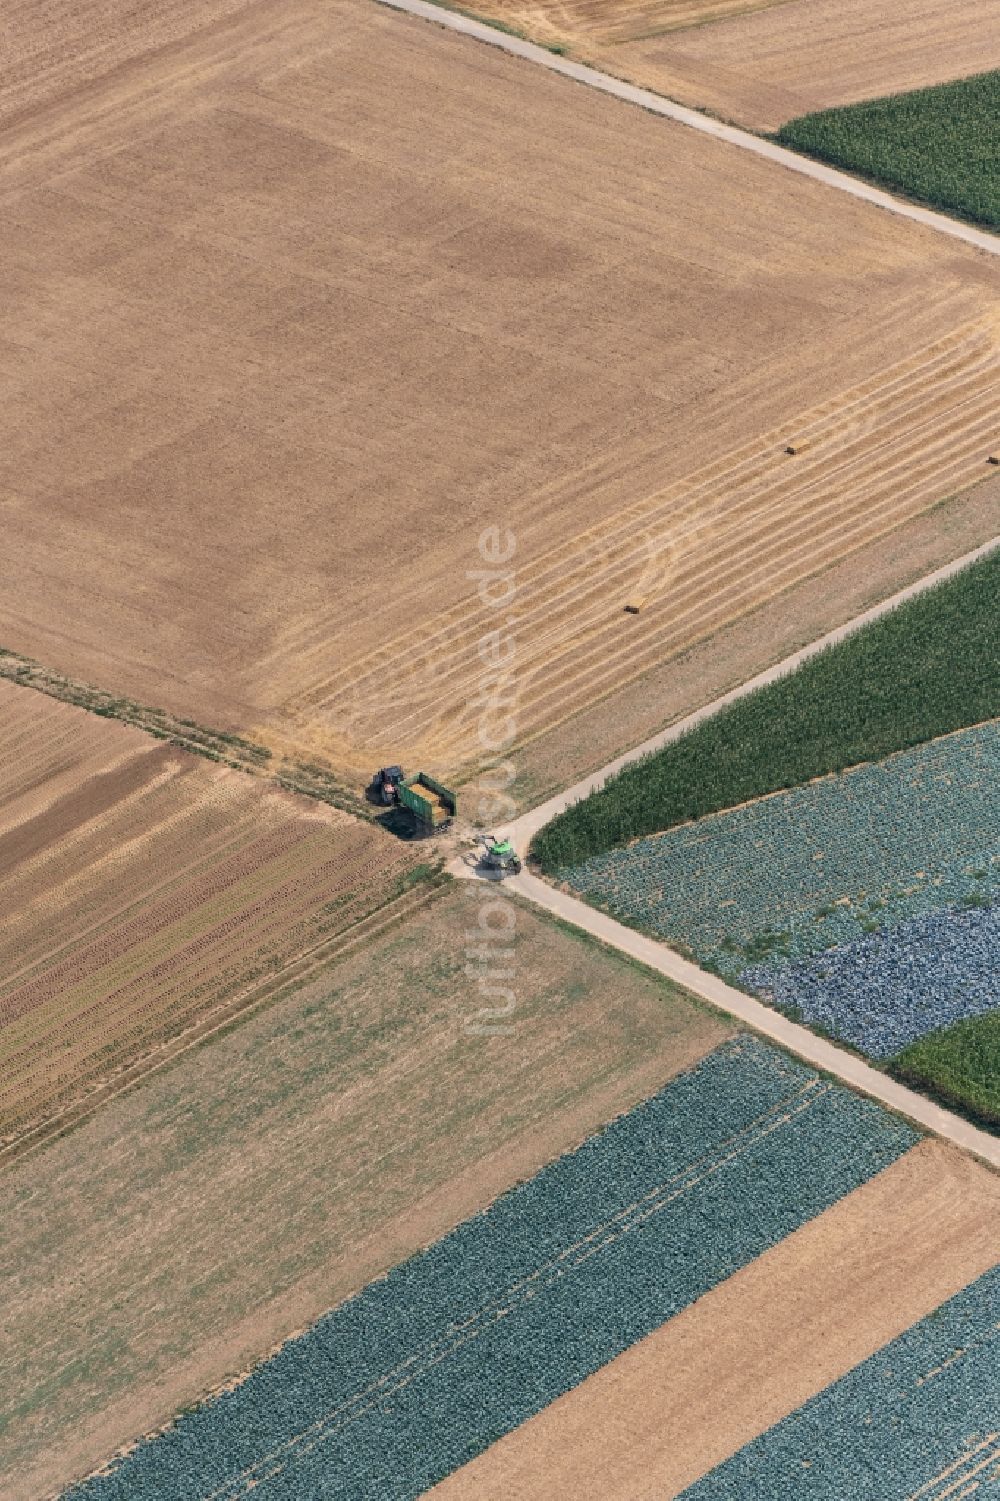 Luftaufnahme Dillingen an der Donau - Strukturen auf landwirtschaftlichen Feldern in Zusamaltheim im Bundesland Bayern, Deutschland